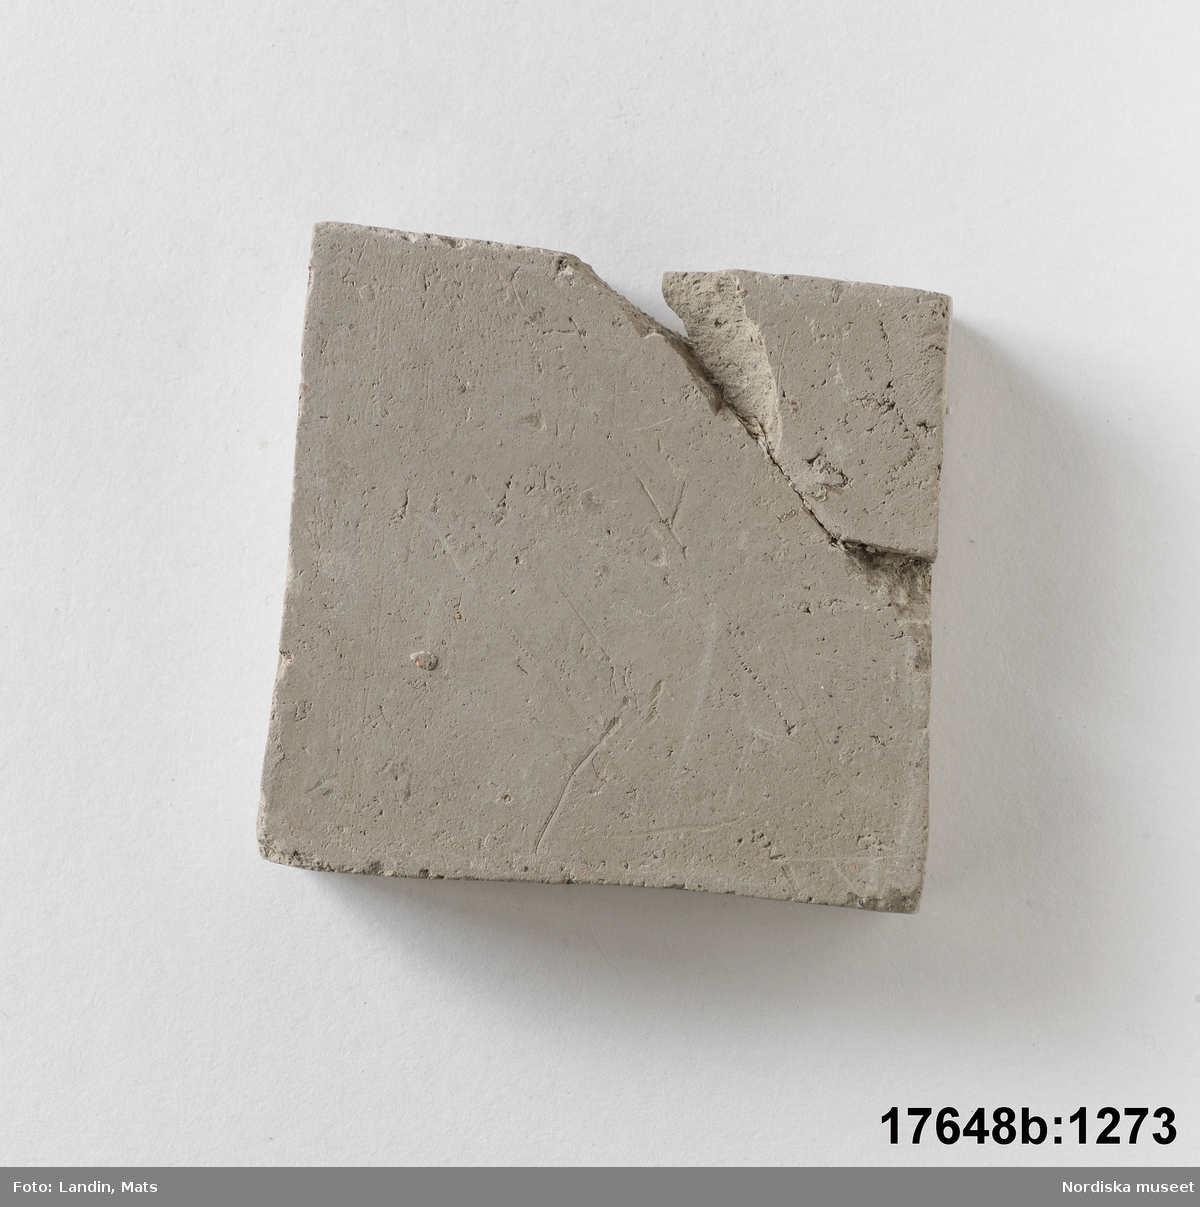 Rektangulär platta av bränd oglaserad grå lera. På en sida text: "Kakelugnsler".

Anm. ett hörn avslaget och påklistrat igen.
/Leif Wallin 2014-01-07